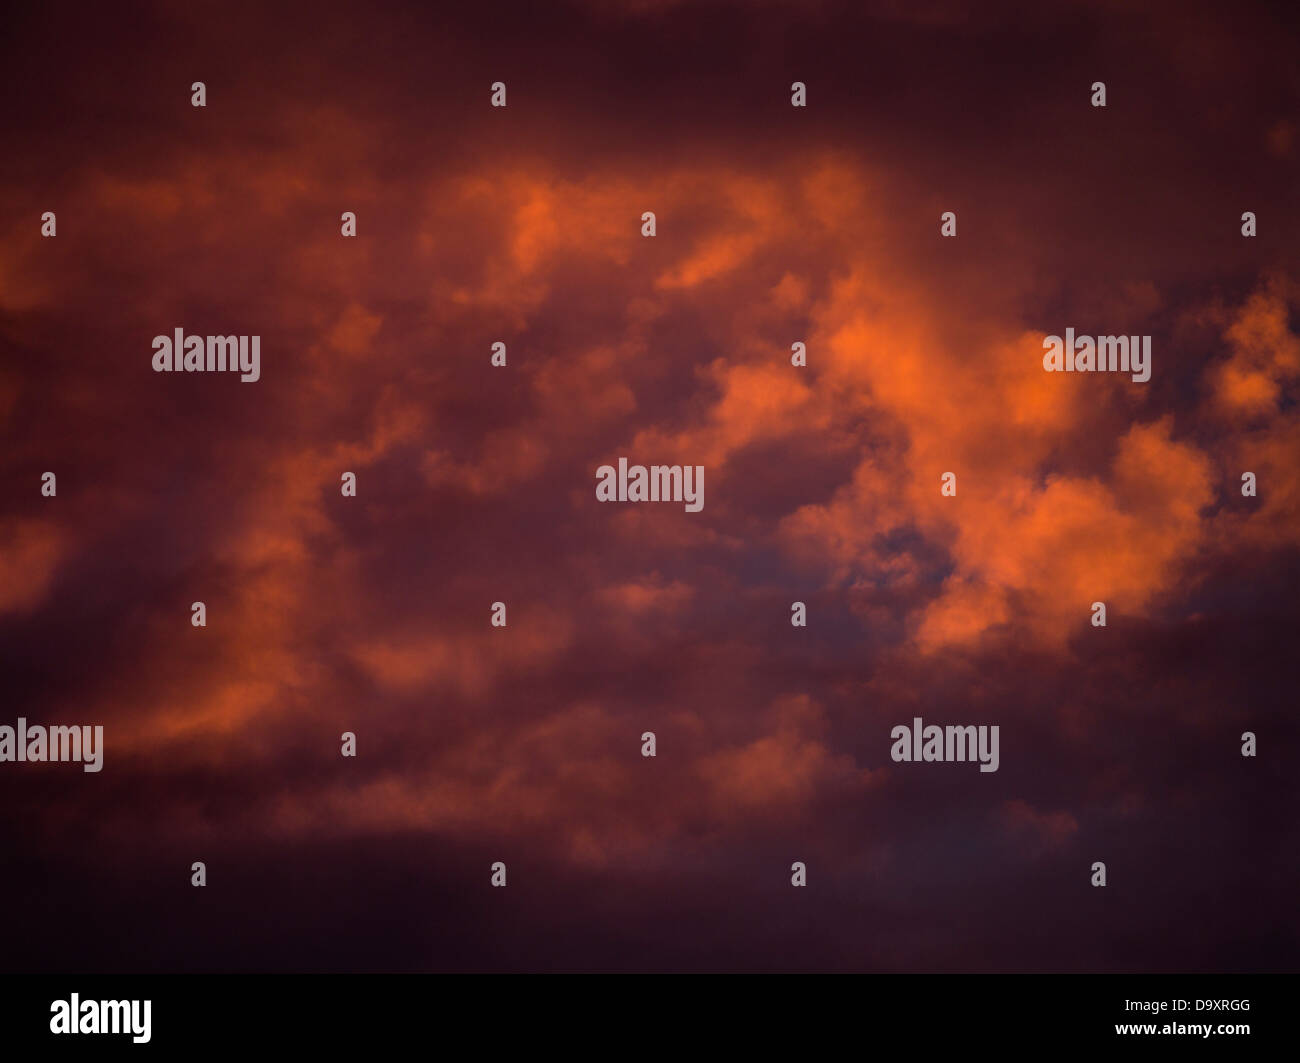 dh noche nube CIELO TIEMPO rojo naranja oscuro tormenta nubes cielos negros sobre la puesta de sol fondo tormentoso atmósfera atmosférica Foto de stock